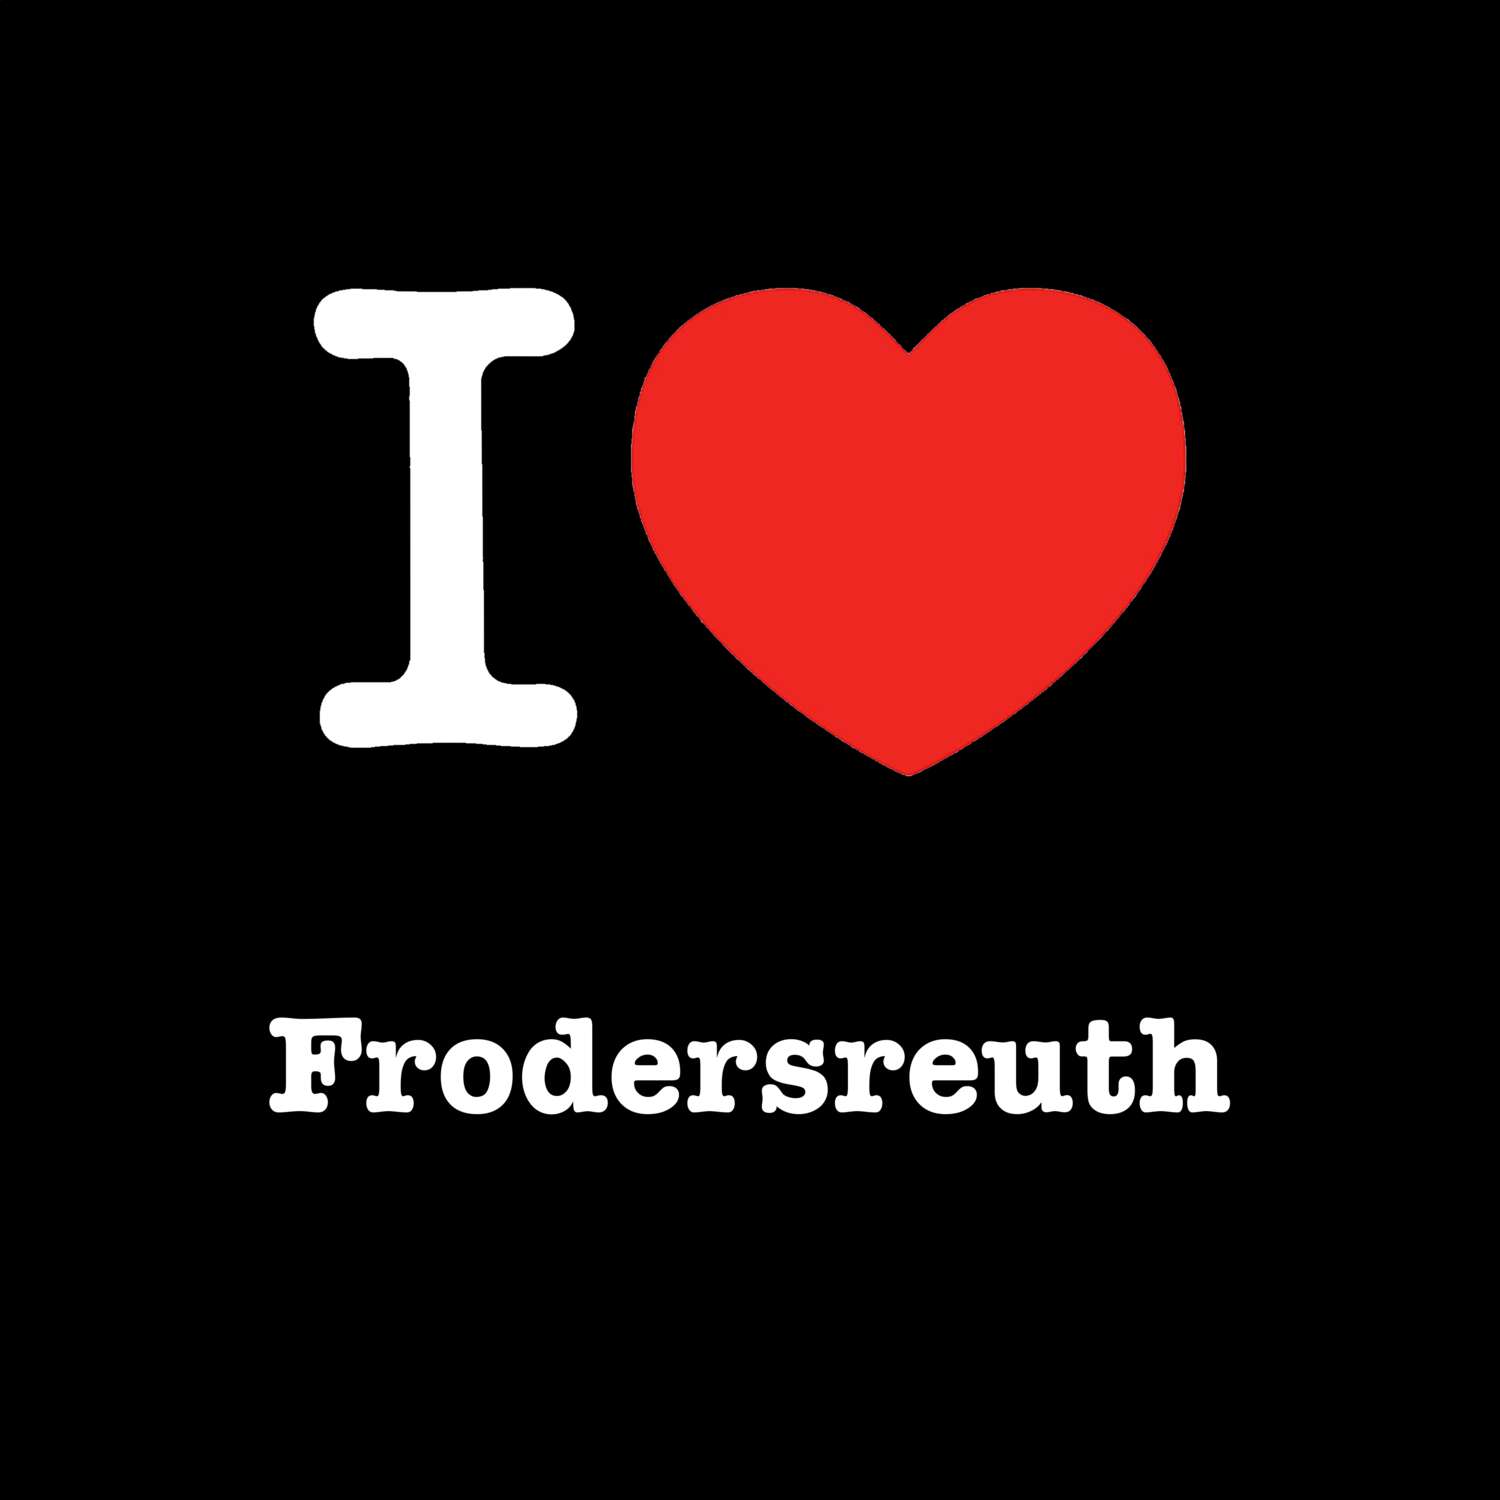 Frodersreuth T-Shirt »I love«